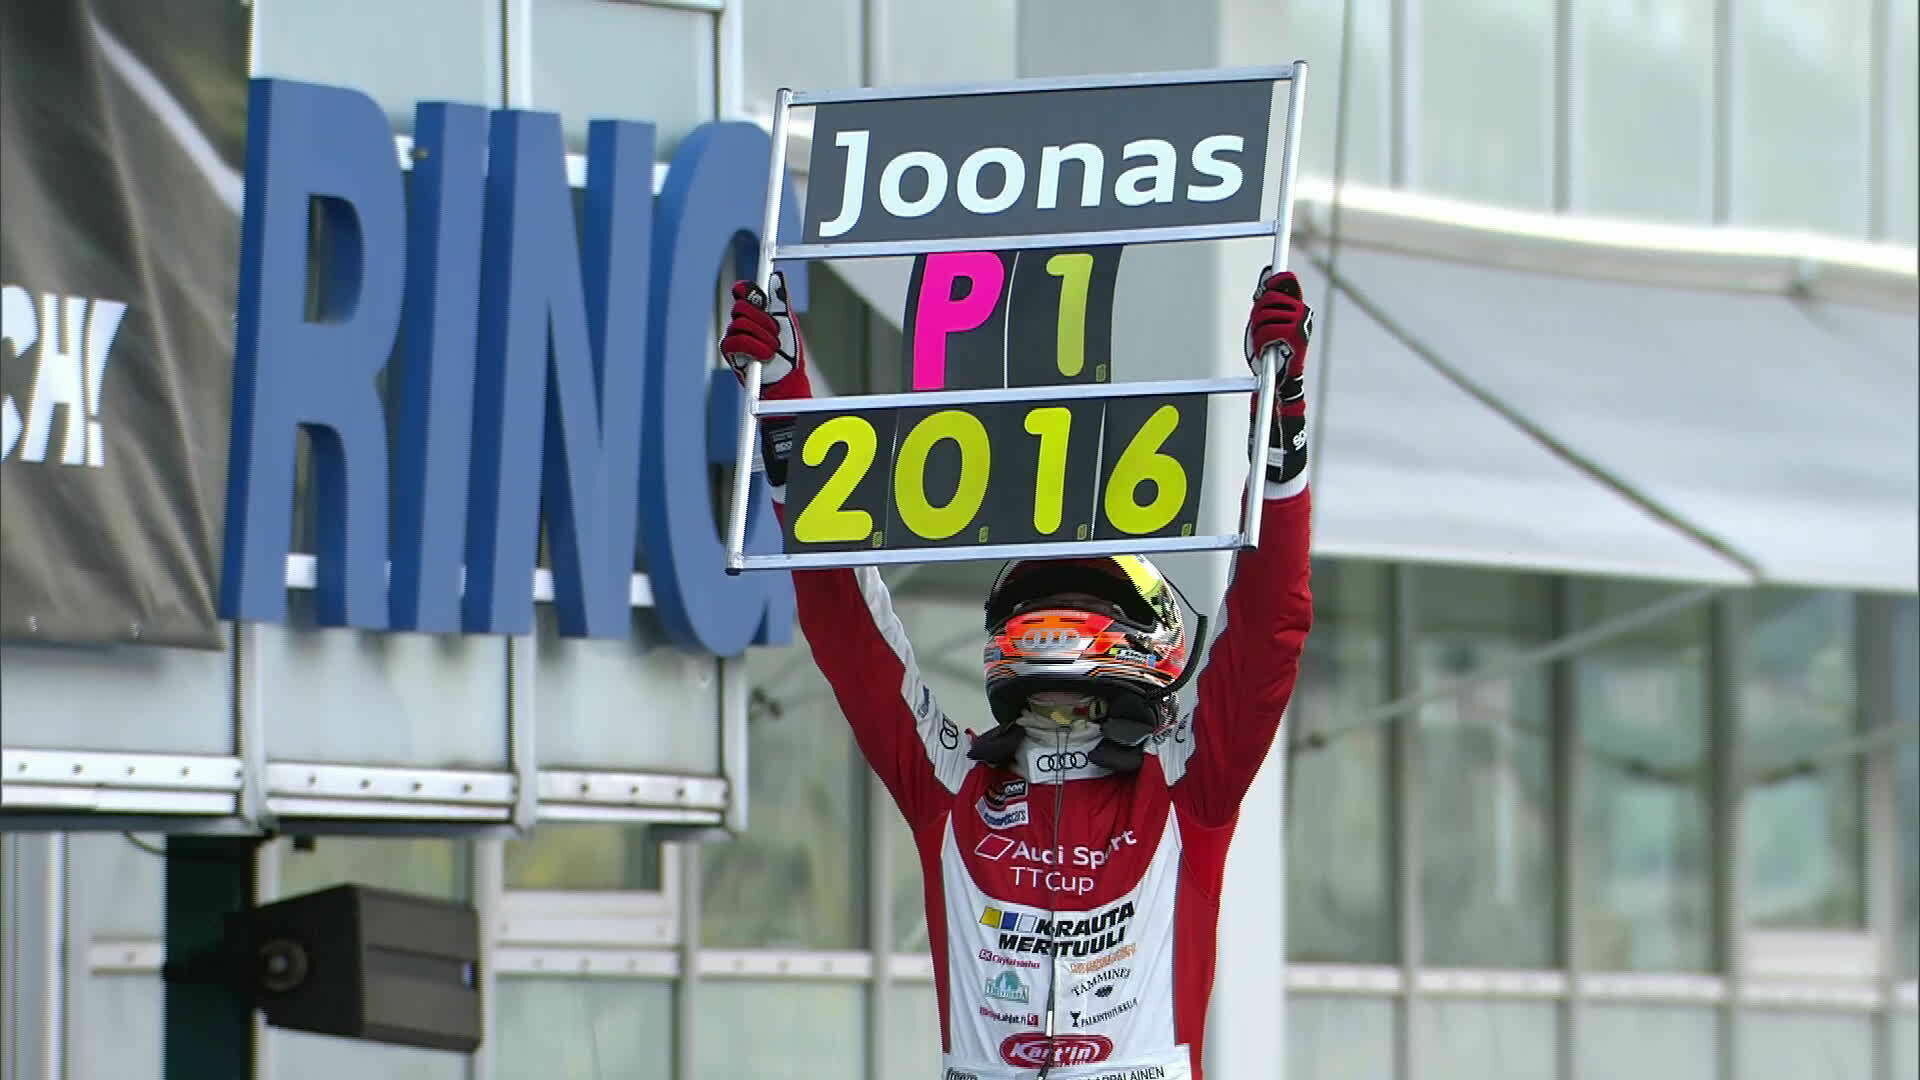 Audi Sport TT Cup: Lappalainen holt sich den Titel